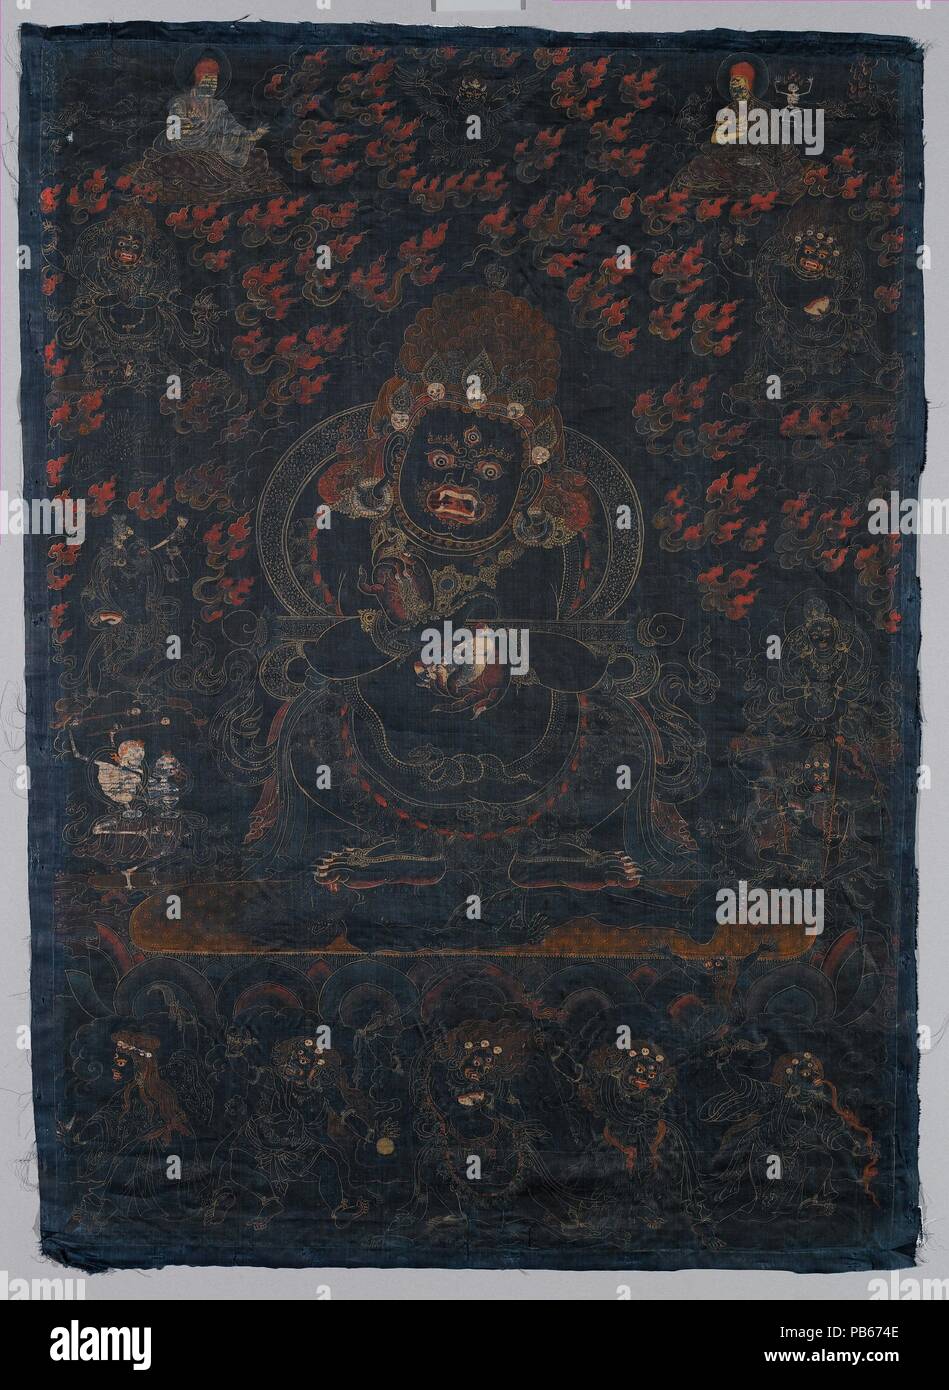 Mahakala, protecteur de la tente. Culture : le Tibet. Dimensions : Image : 29 x 20 1/2 in. (73,7 x 52,1 cm) Total : 30 1/4 x 21 3/4 in. (76,8 x 55,2 cm). Date : ca. 1650. Cette masse noire peinture est une visualisation de Mahakala comme Panjarantha, le protecteur éclairé du bouddhisme. Il foule aux pieds un cadavre de sexe masculin sous ses pieds et l'écorchage affiche un couteau (kartrika) dans la main droite et une coupe du crâne (kapala) à sa gauche, met en œuvre pour couper à travers le délire et l'ignorance. Un rituel wand (gandi) est équilibré dans les escrocs de ses bras. Panjaranatha est compris comme le 'original' de Mahakala Banque D'Images